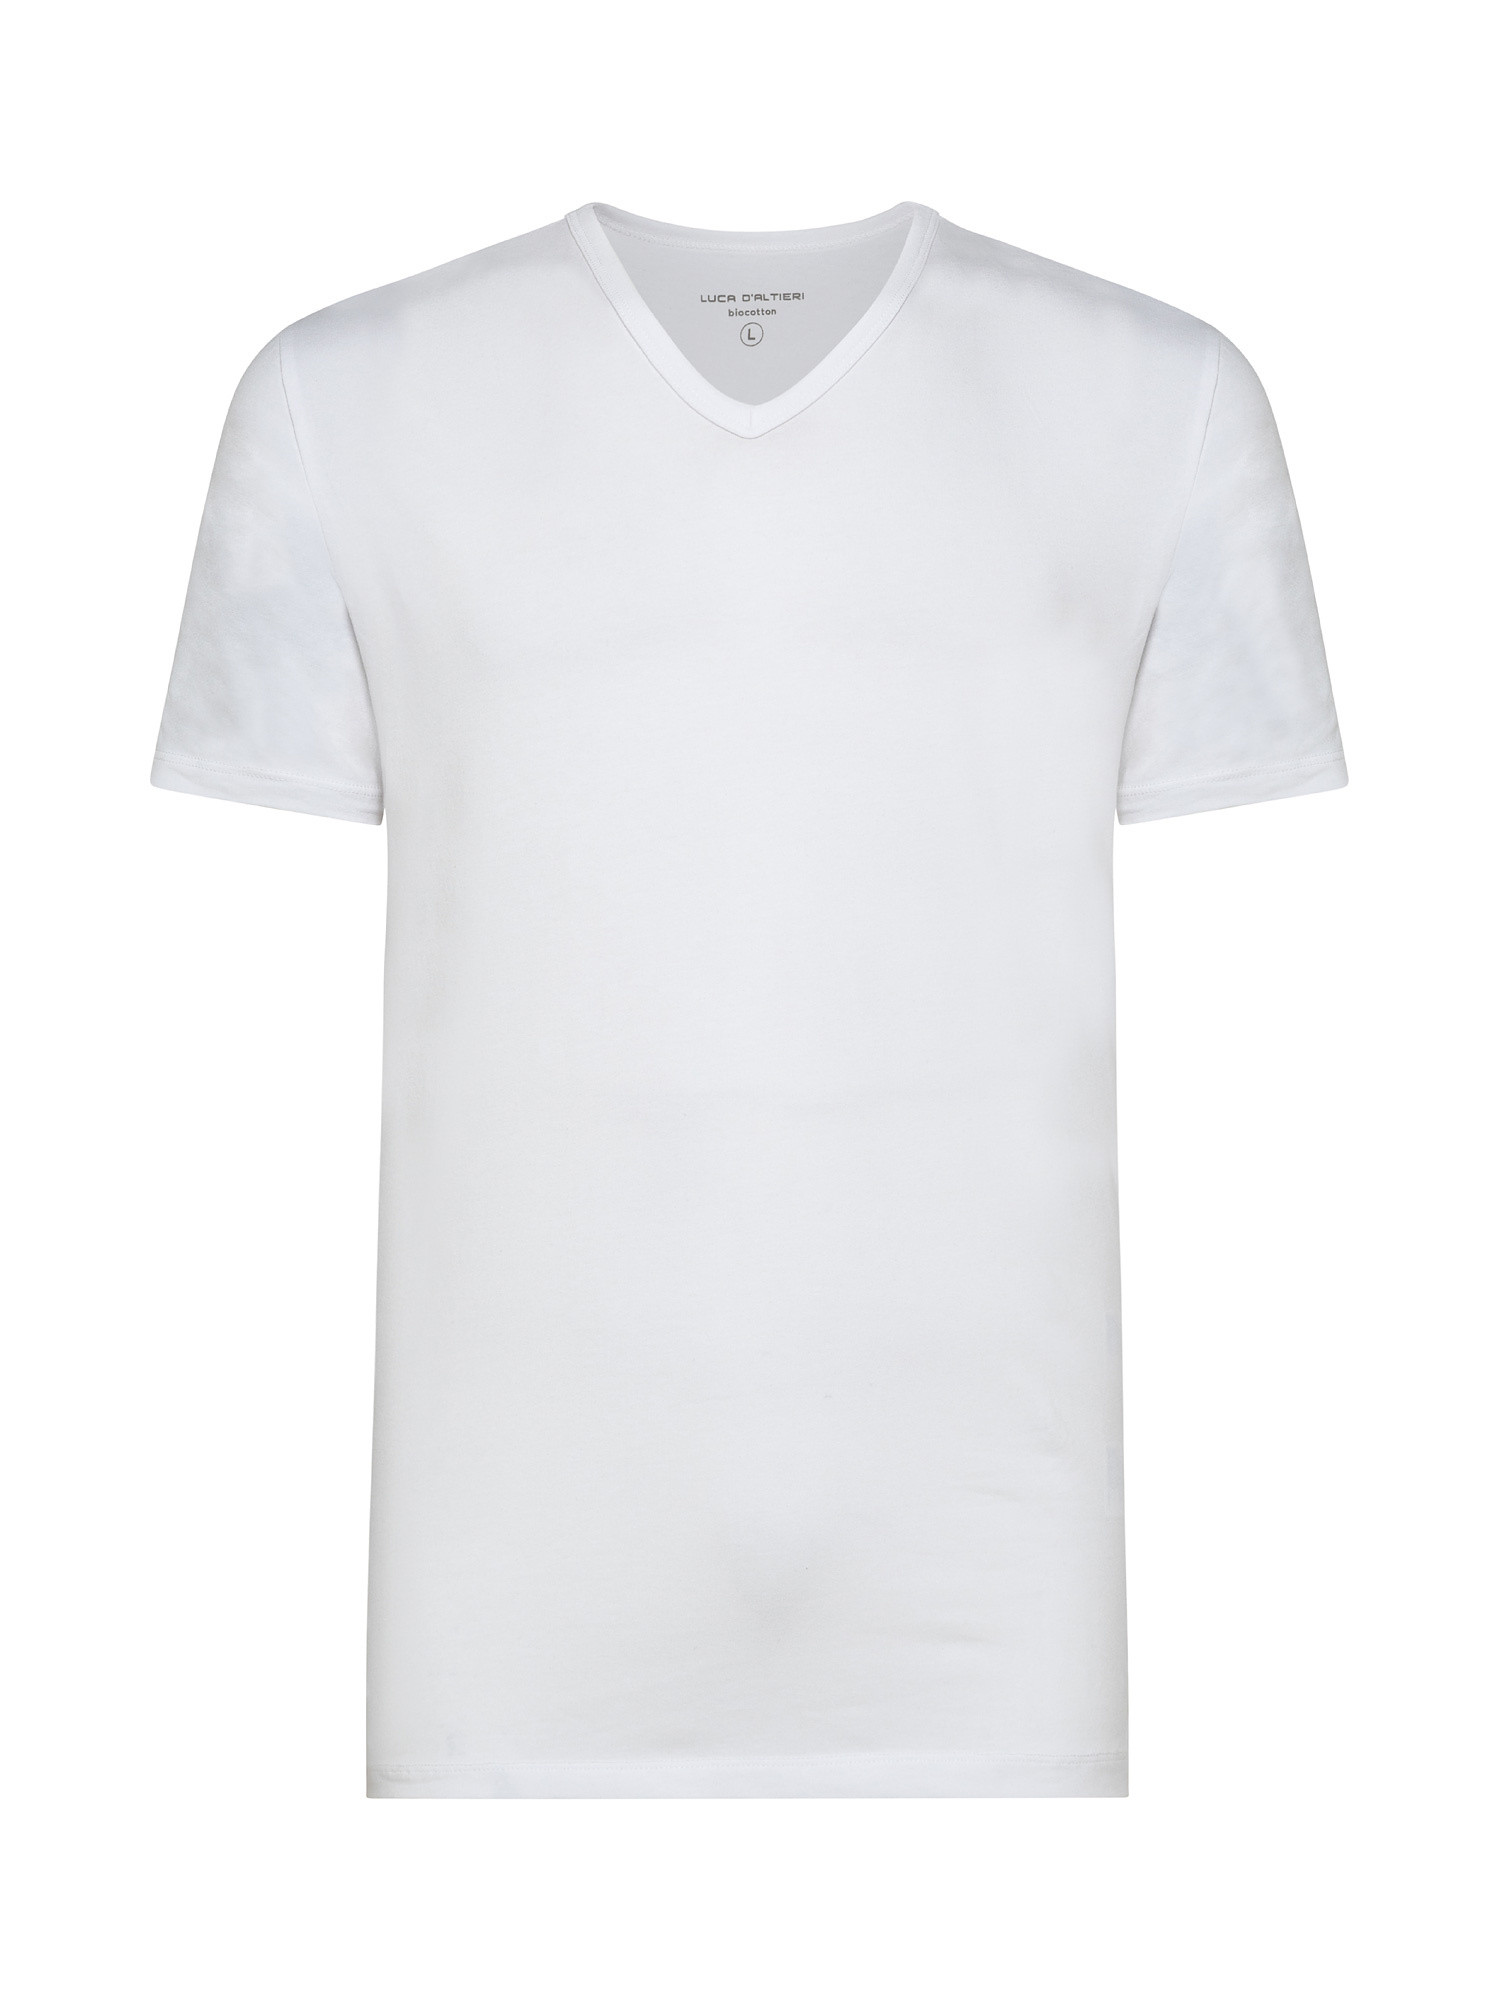 Set 2 t-shirt scollo V cotone tinta unita, Bianco, large